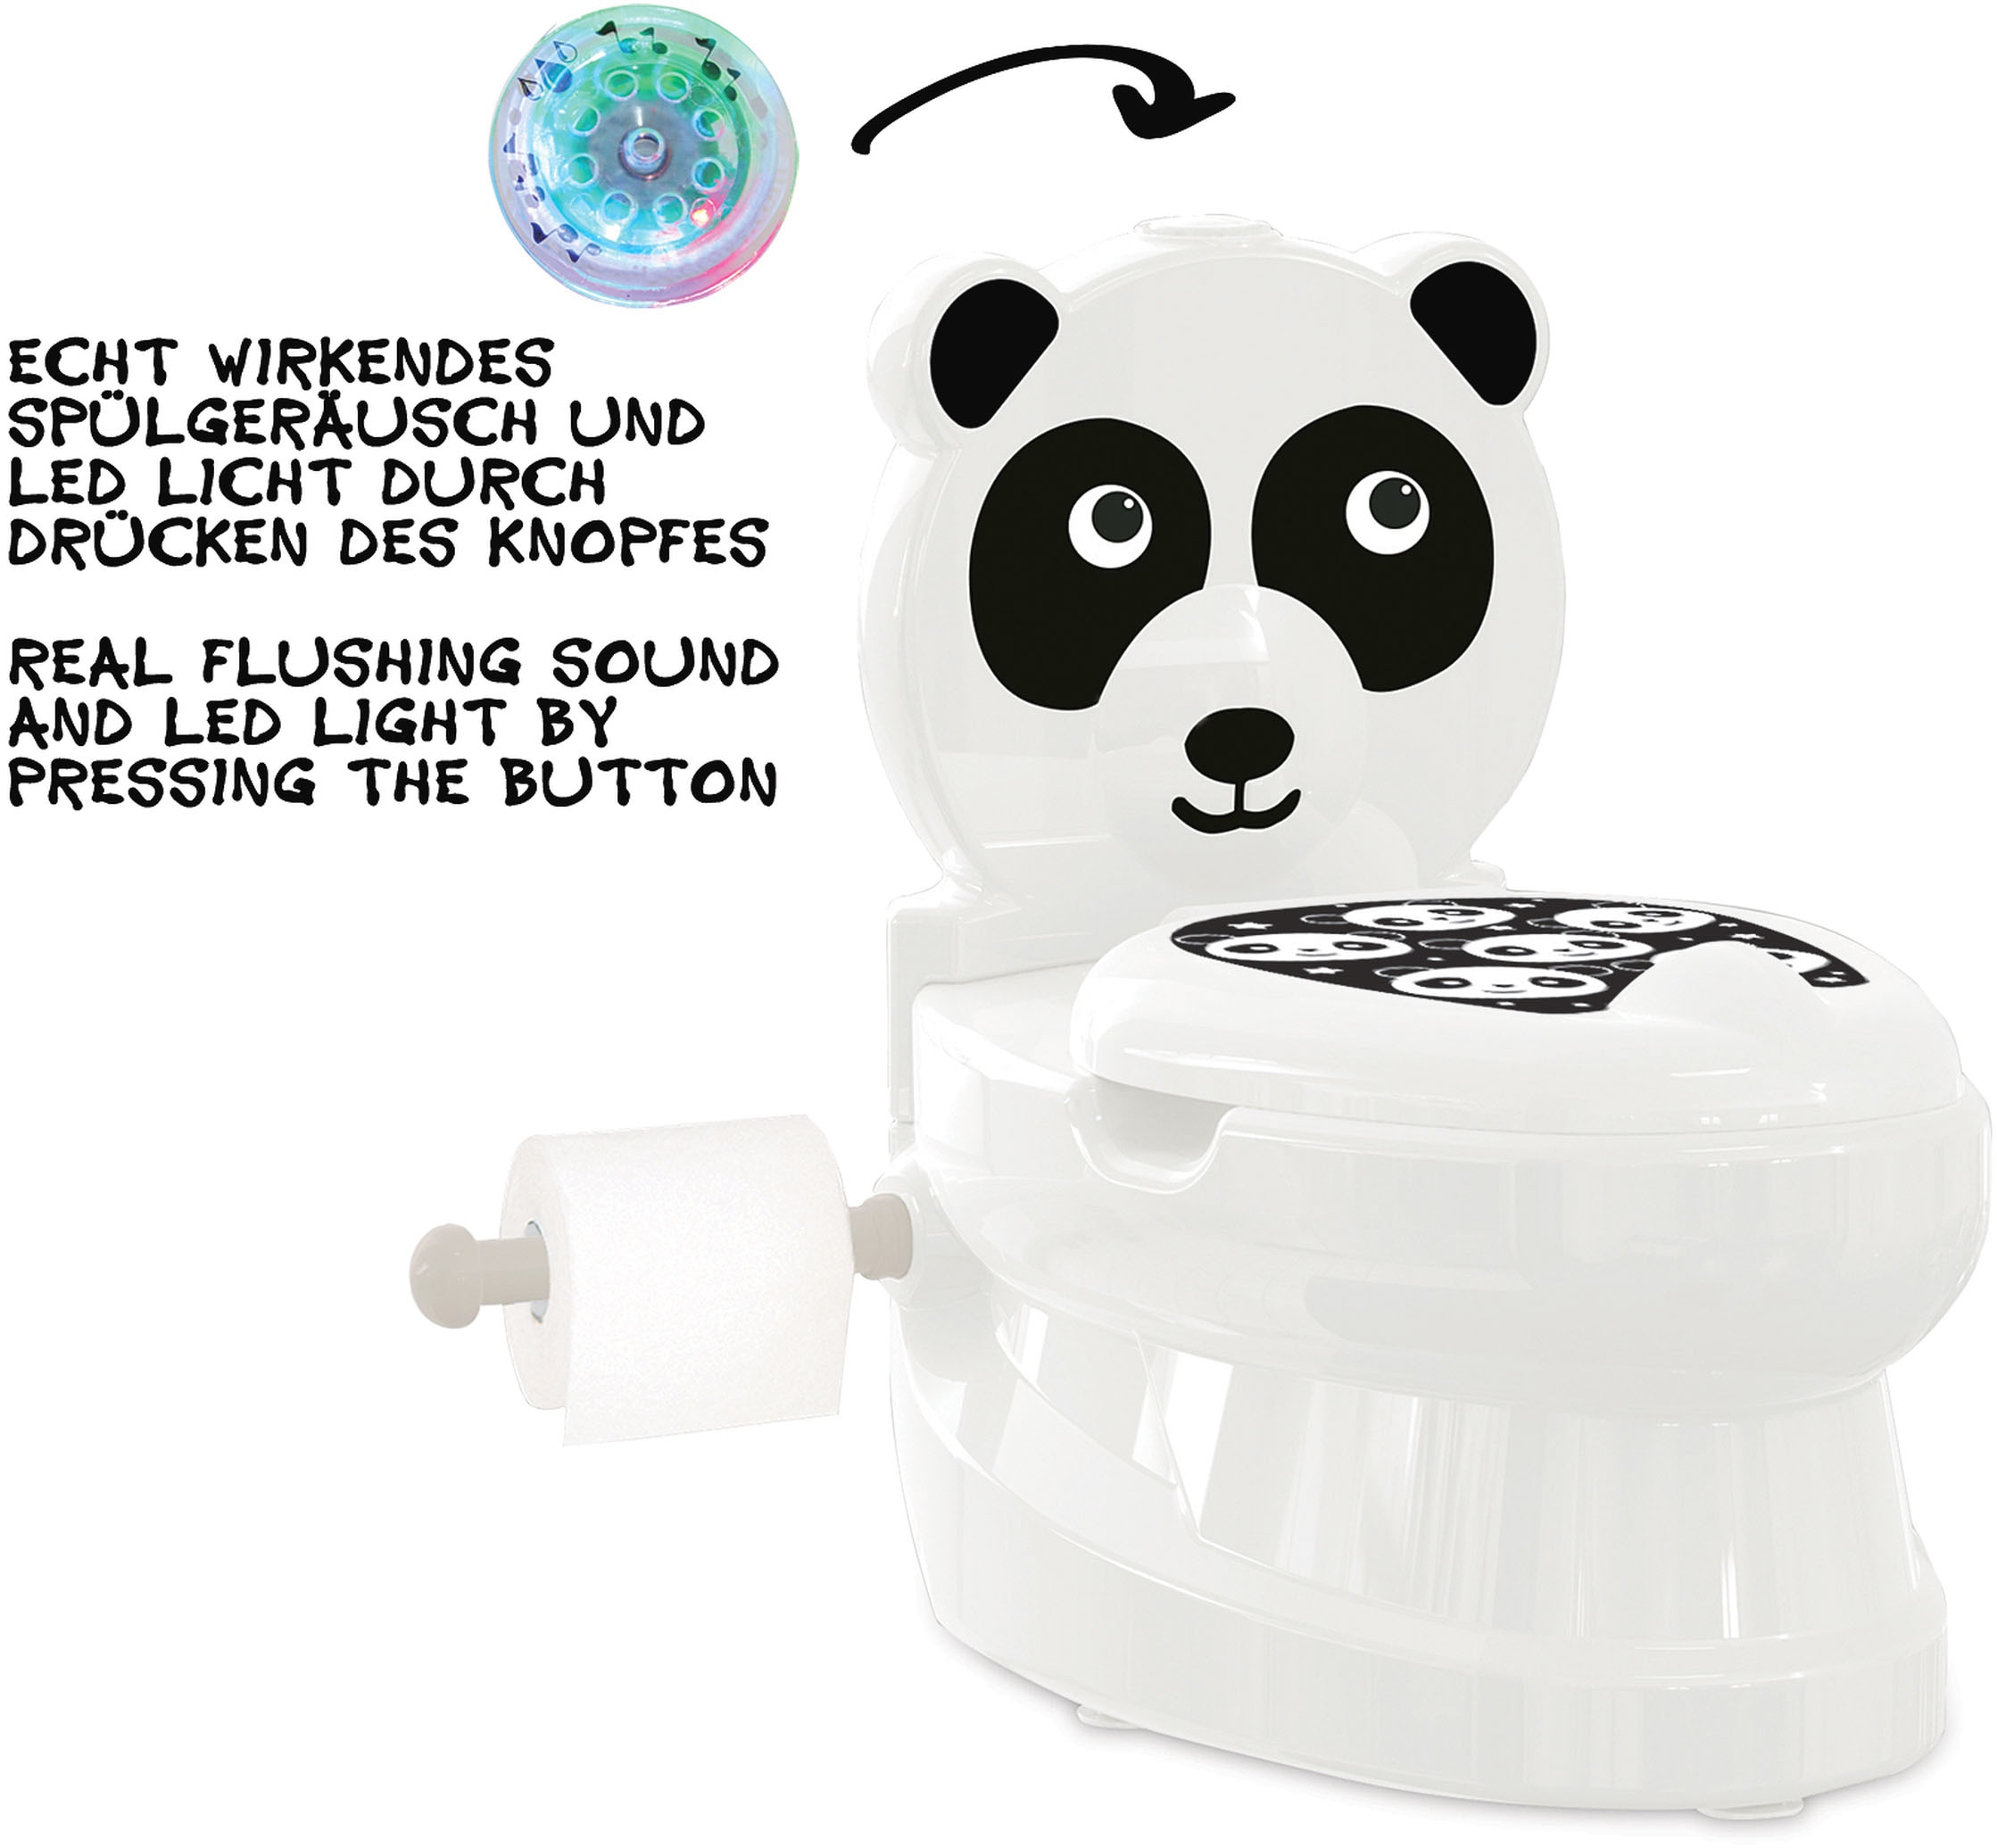 Jamara Toilettentrainer »Meine kleine Toilette, Panda«, mit Spülsound und Toilettenpapierhalter